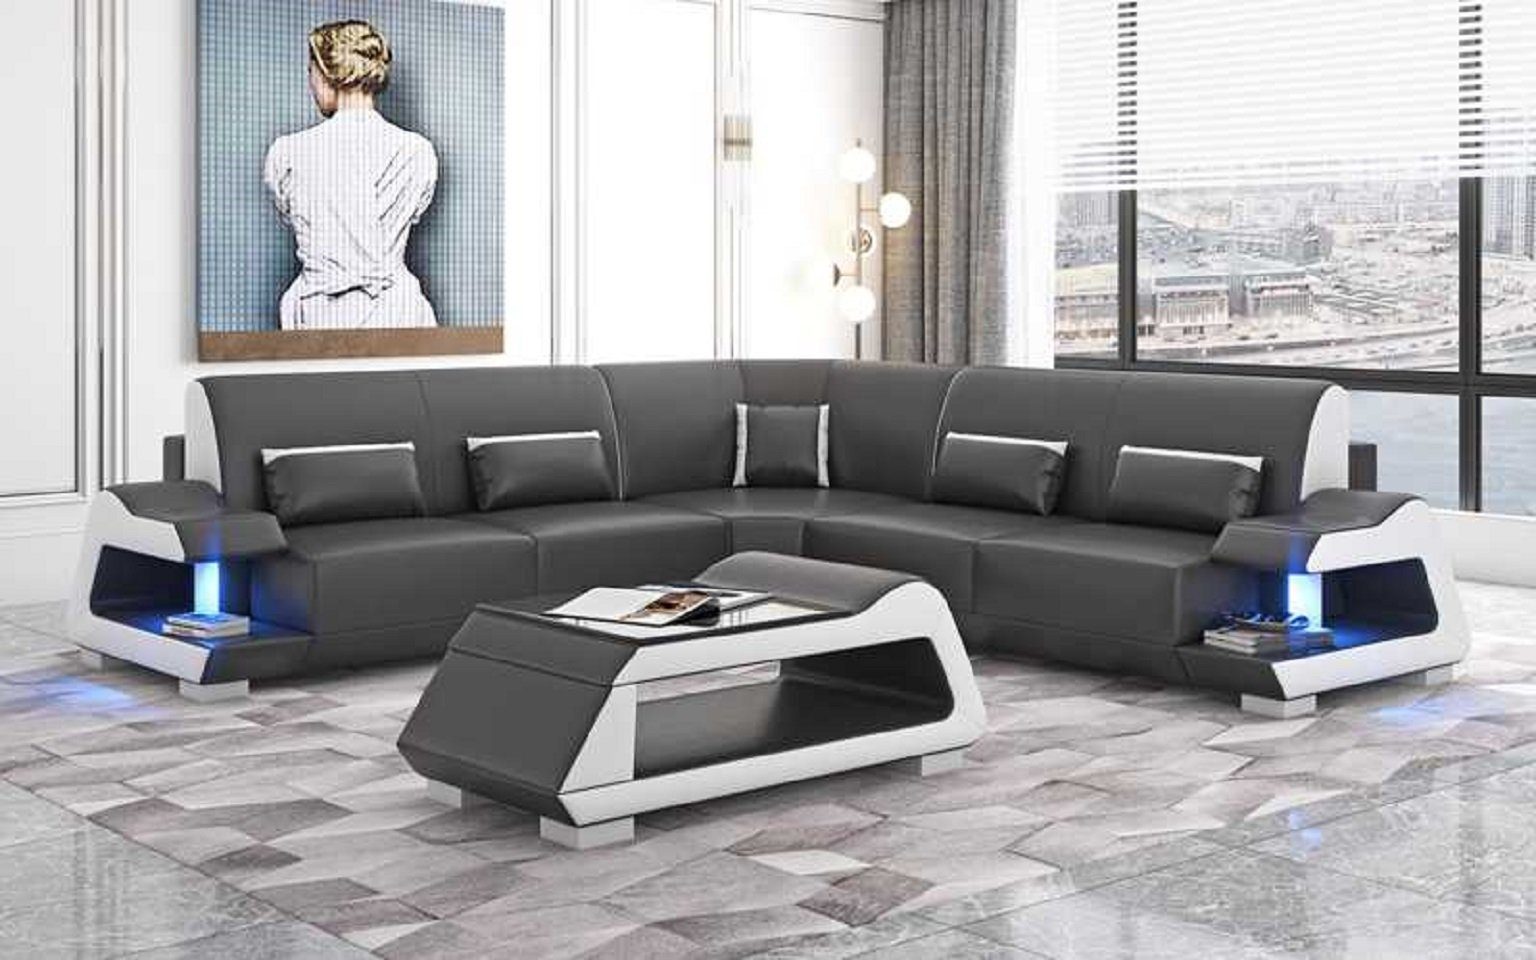 JVmoebel Ecksofa Eckgarnitur Europe Wohnzimmer Form Teile, 3 Luxus Ecksofa Schwarz Sofas, Sofa L Made in